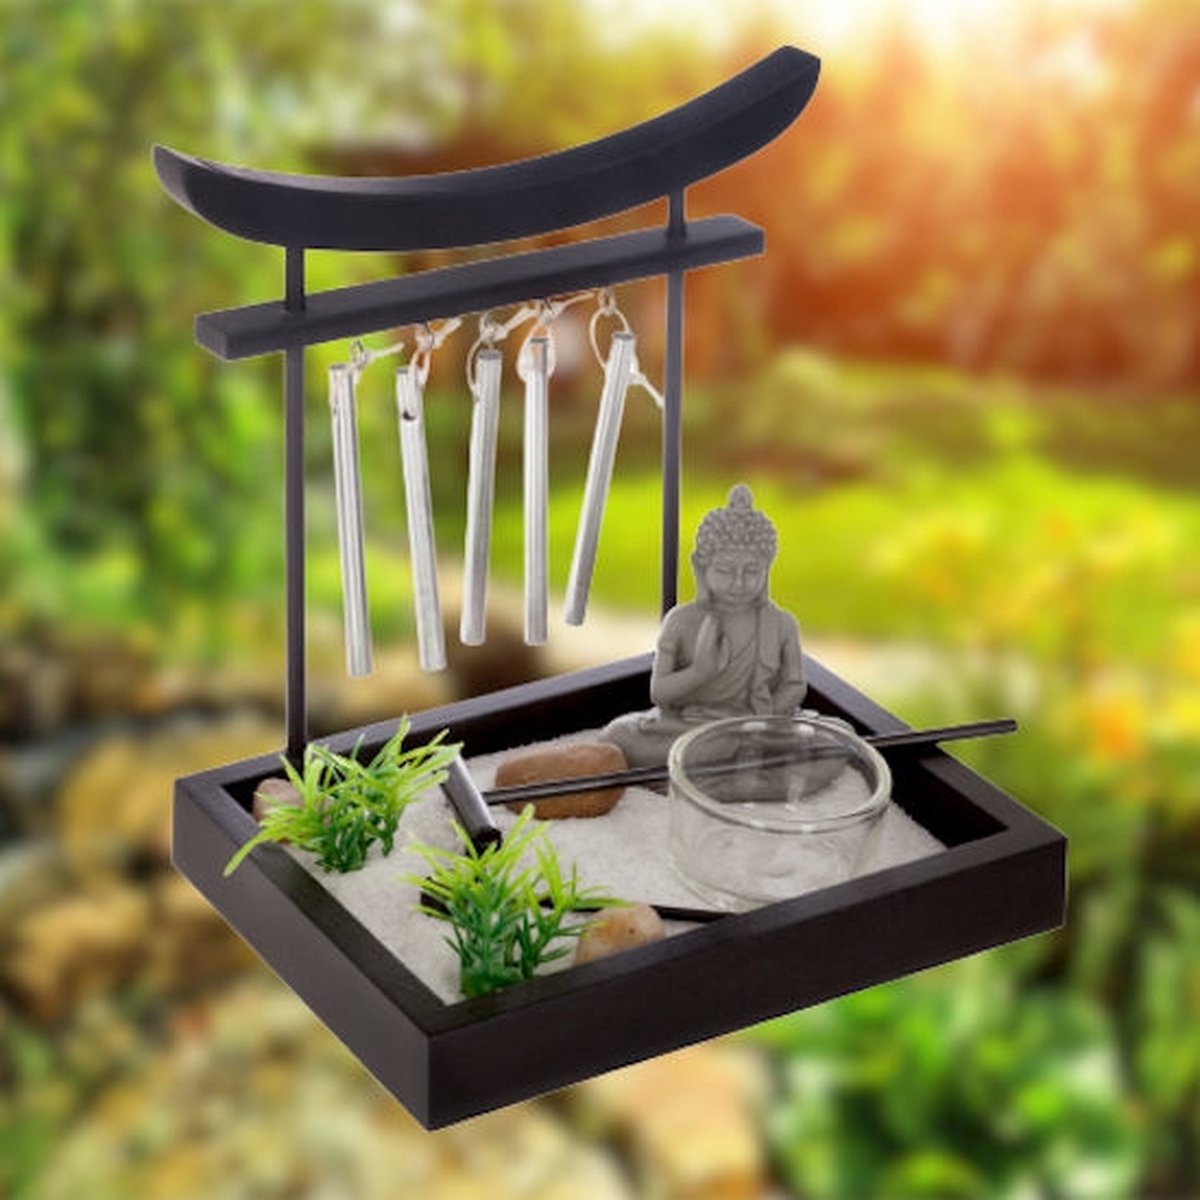 Decopatent ® Zen Waxinehouder Met Boeddha En Windgong - Relax Plateau